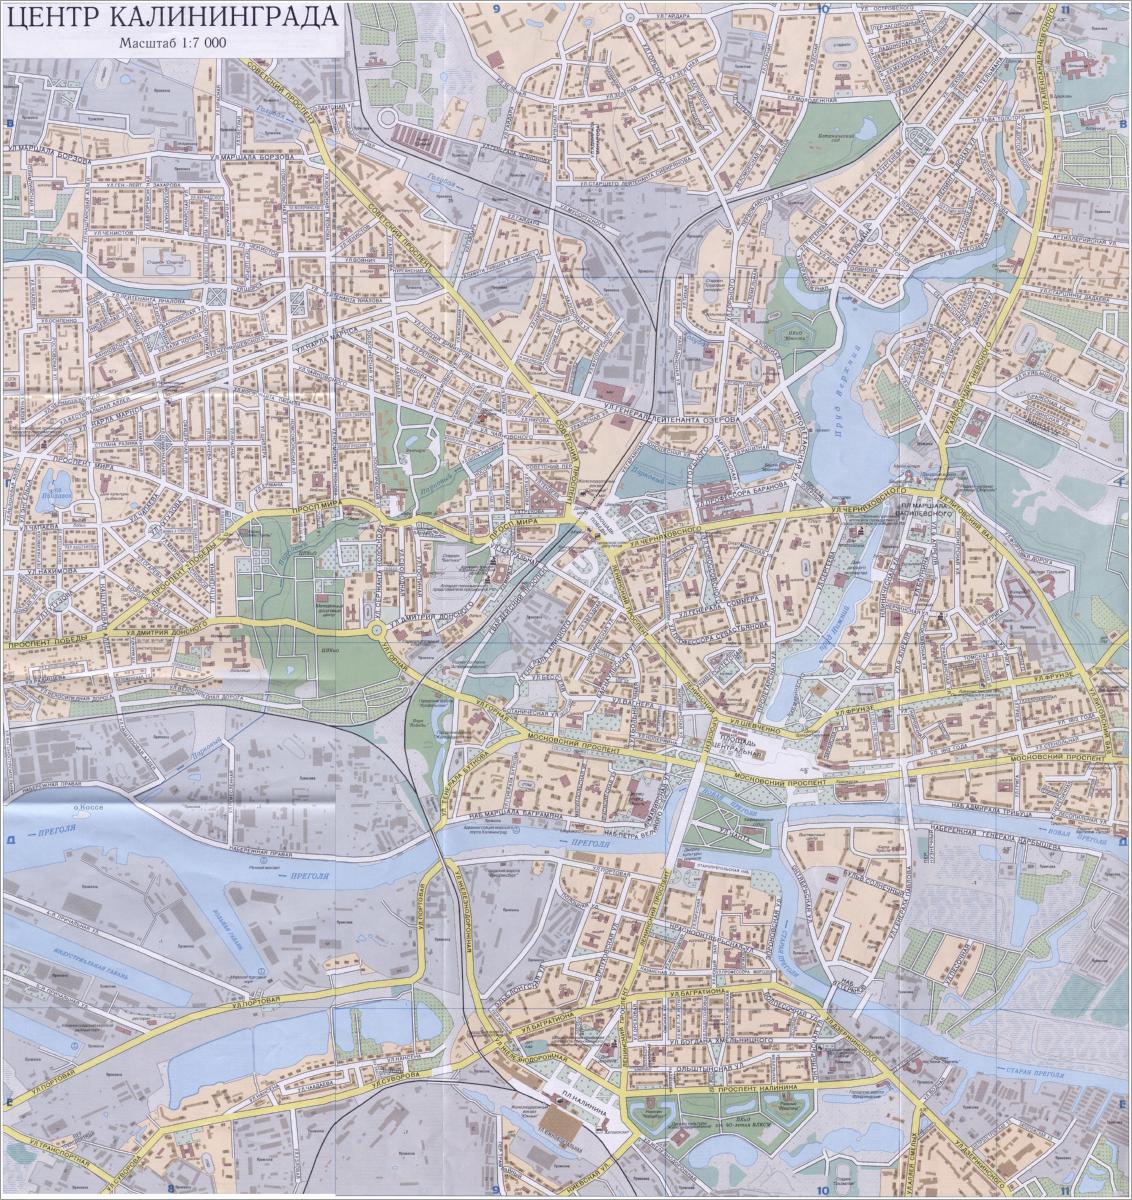 Straßenkarte des Kaliningrader Stadtzentrums, 1999